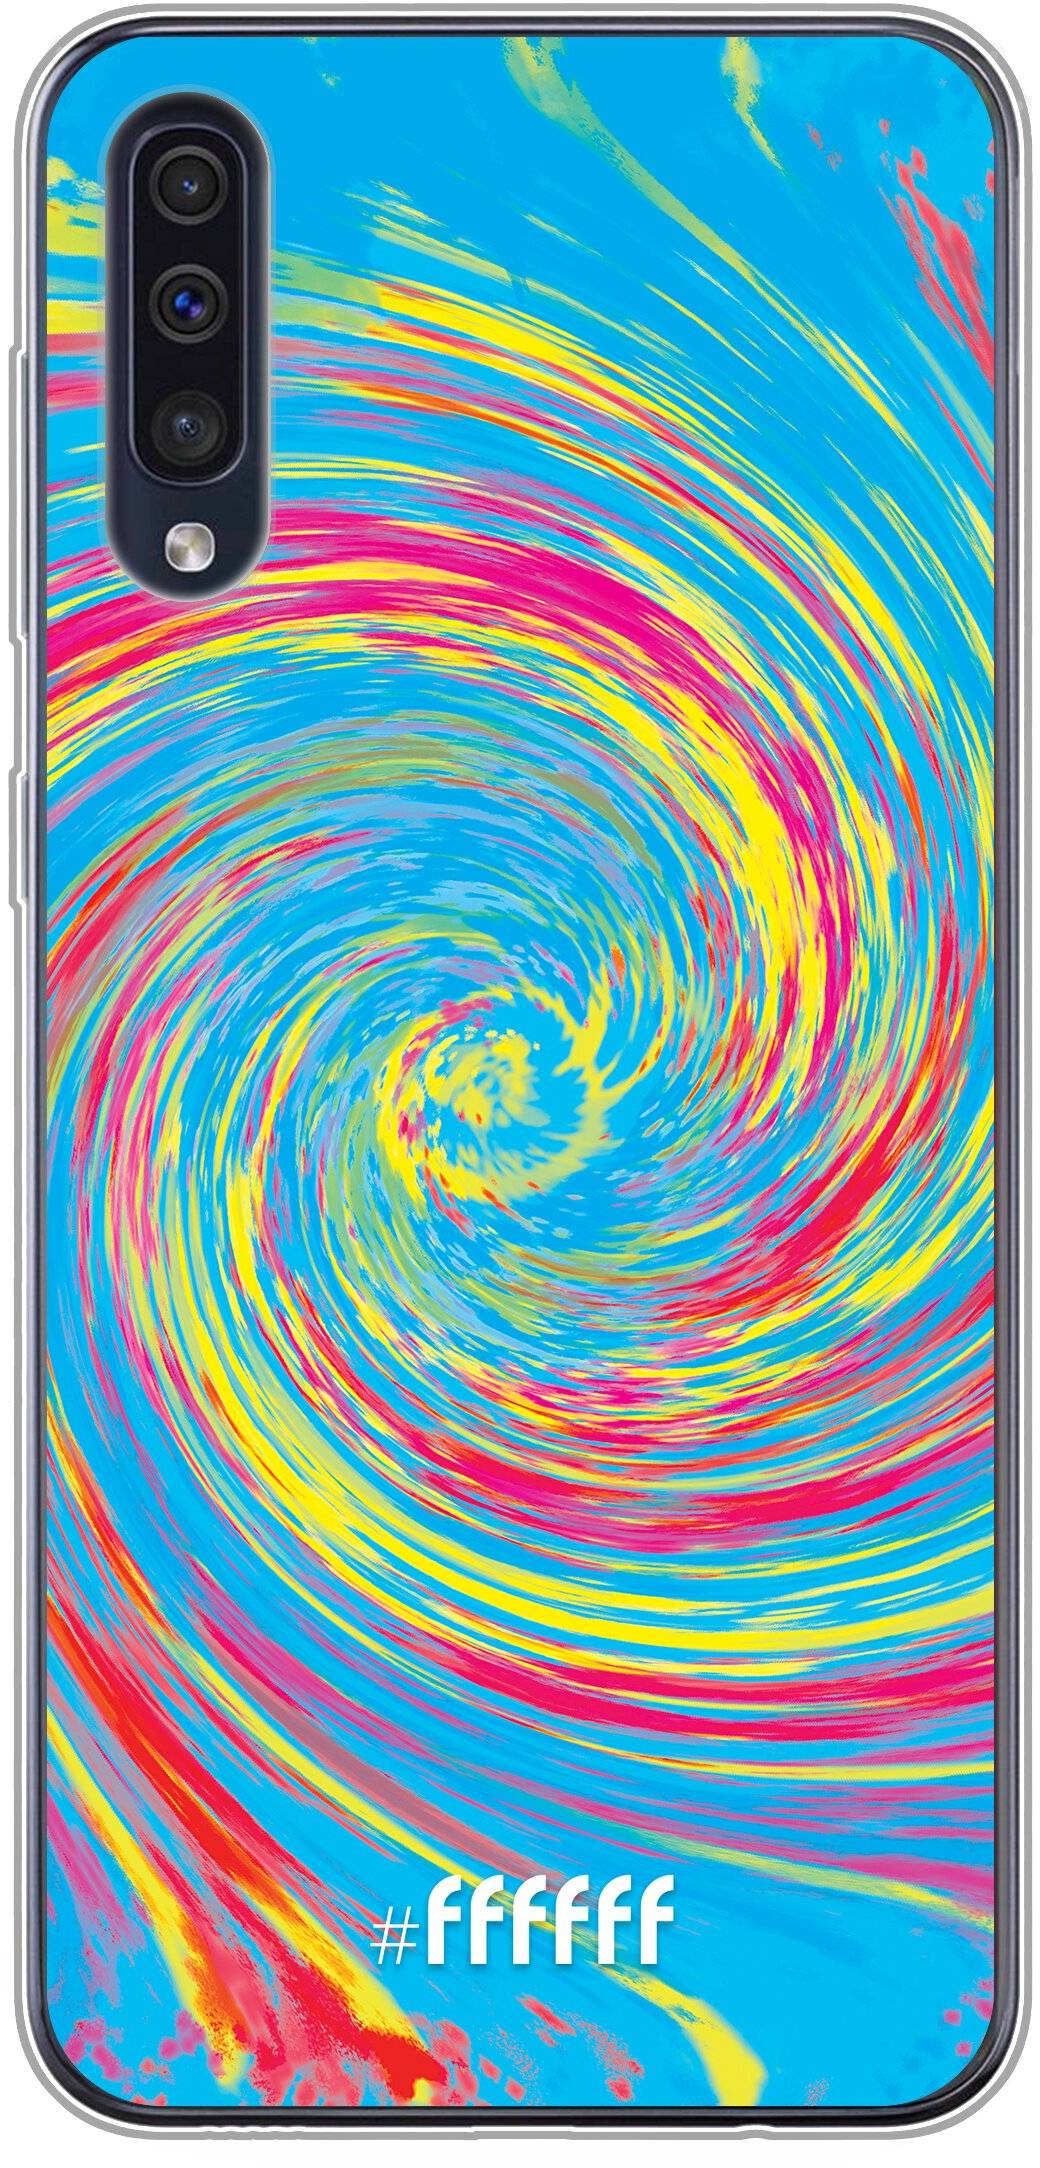 Swirl Tie Dye Galaxy A50s